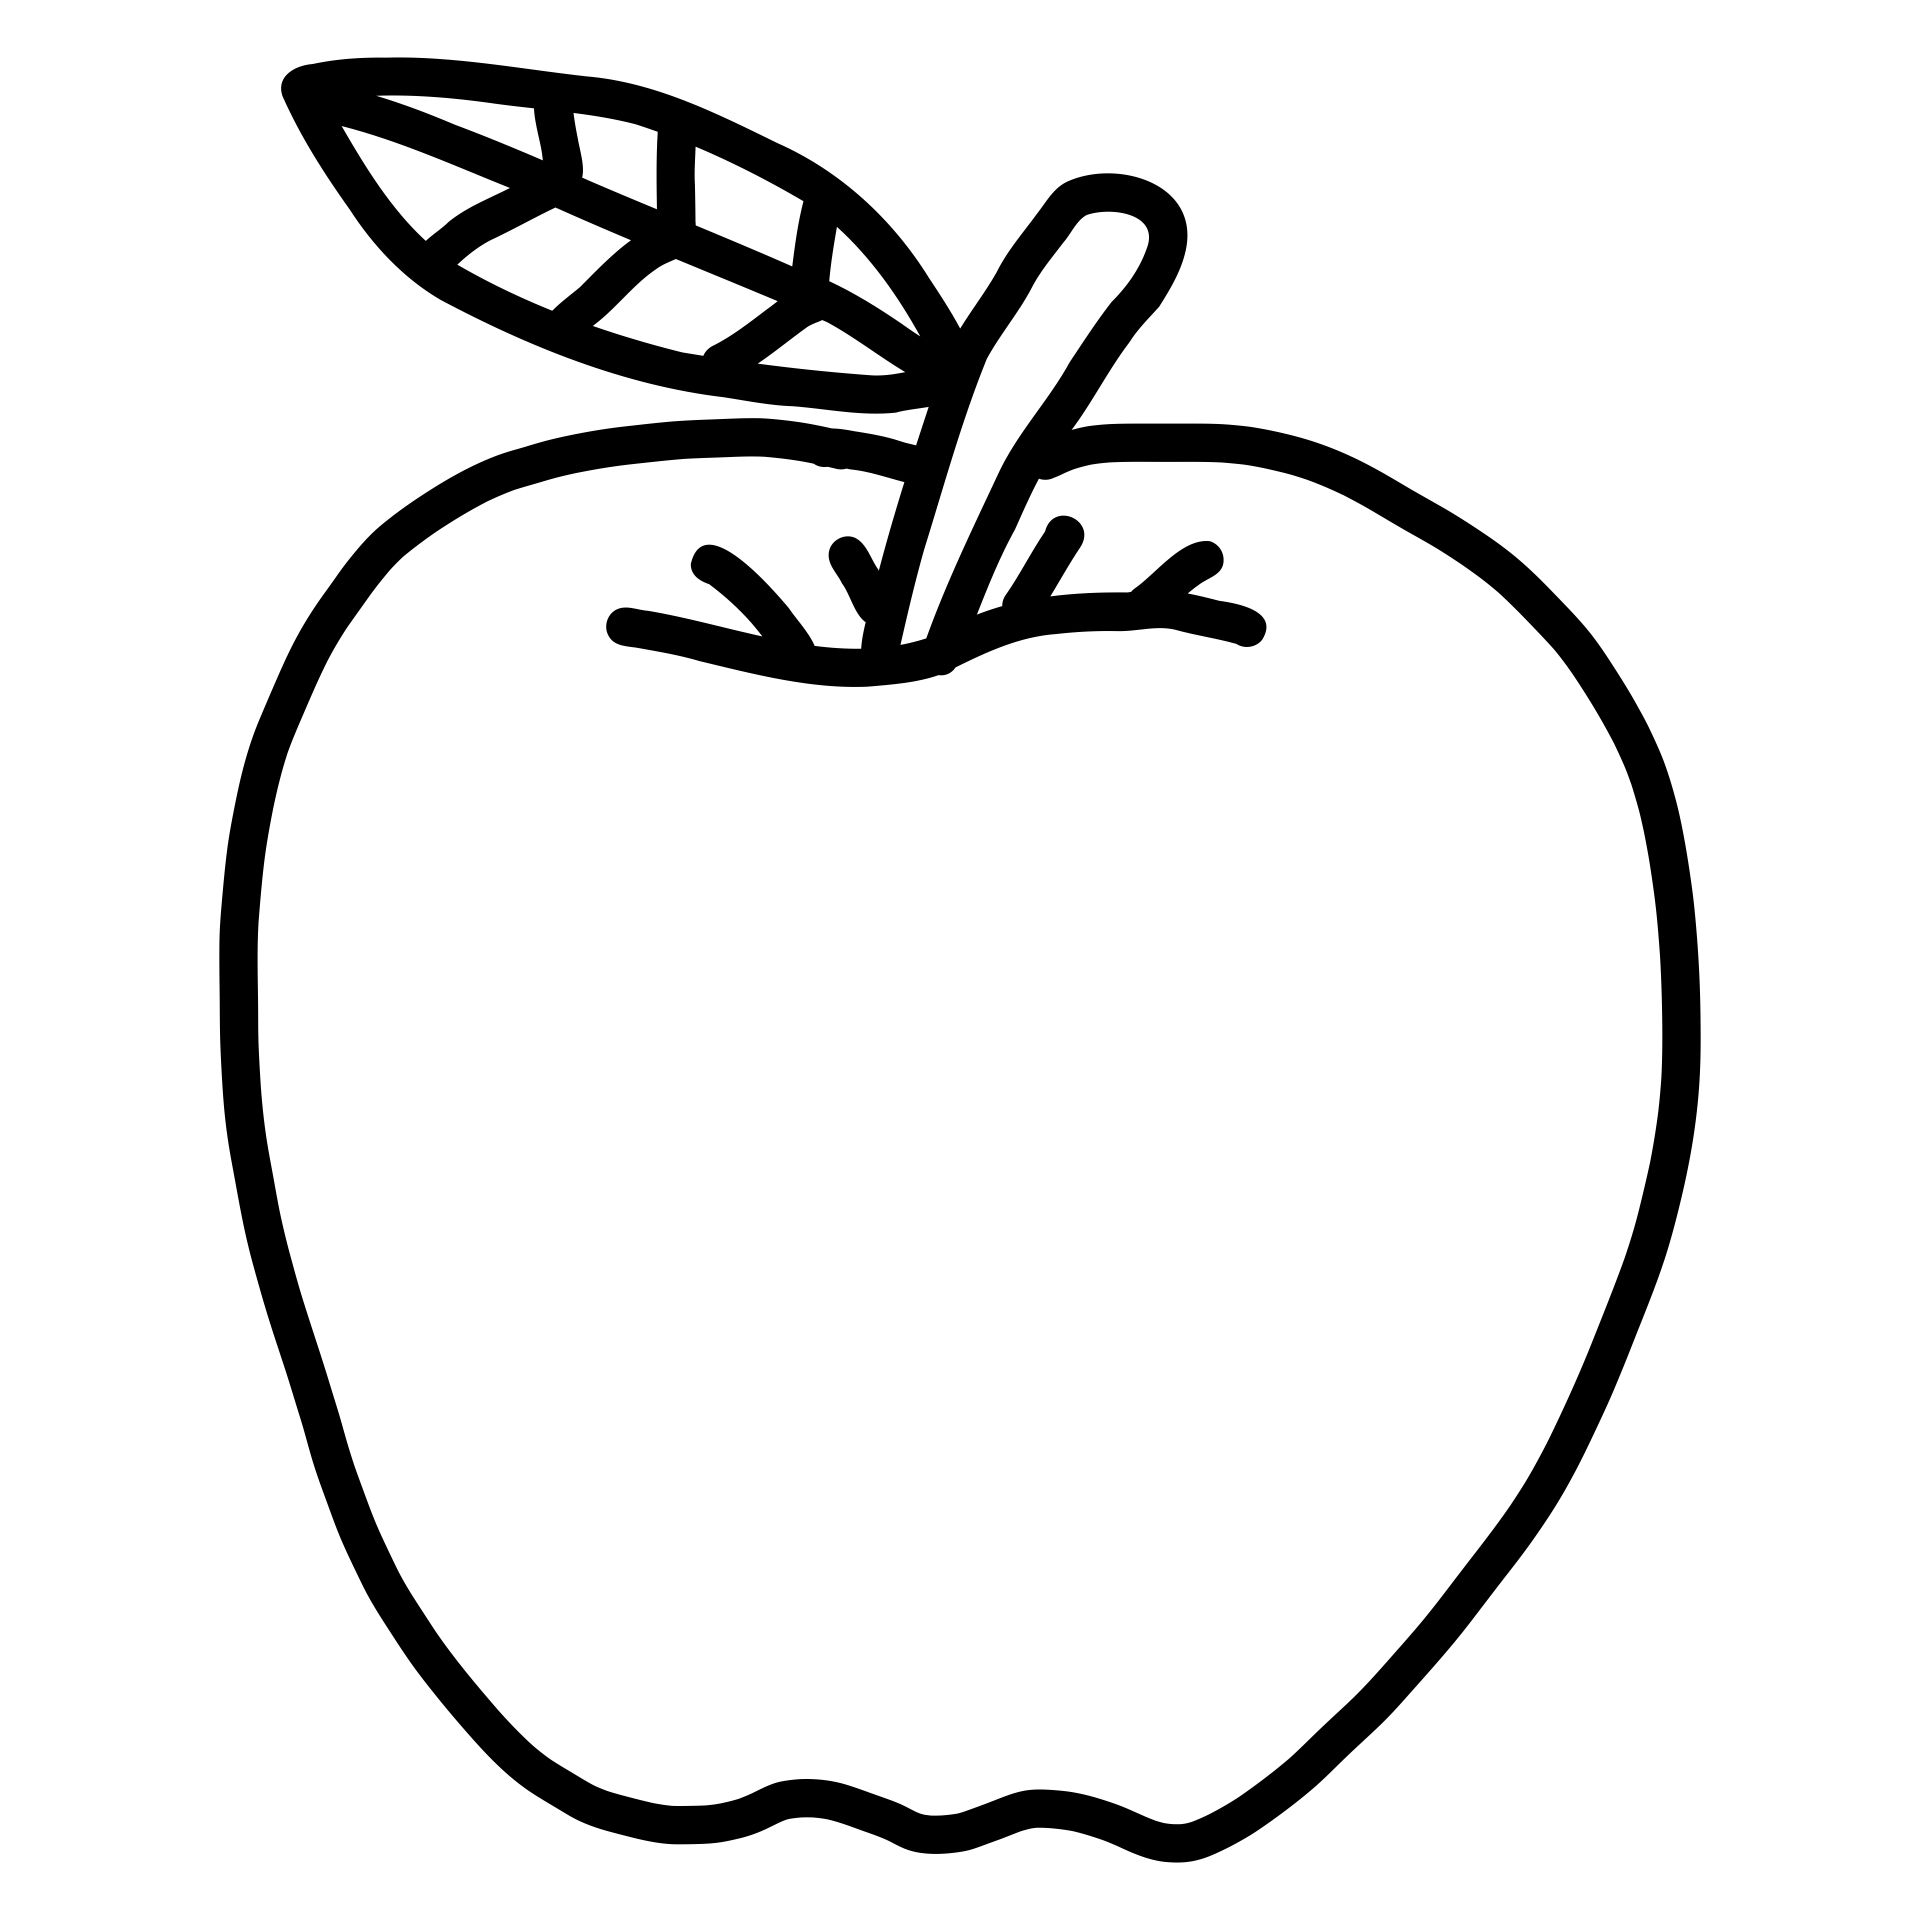 7 Best Images of Printable Apple Template Preschool Free Apple